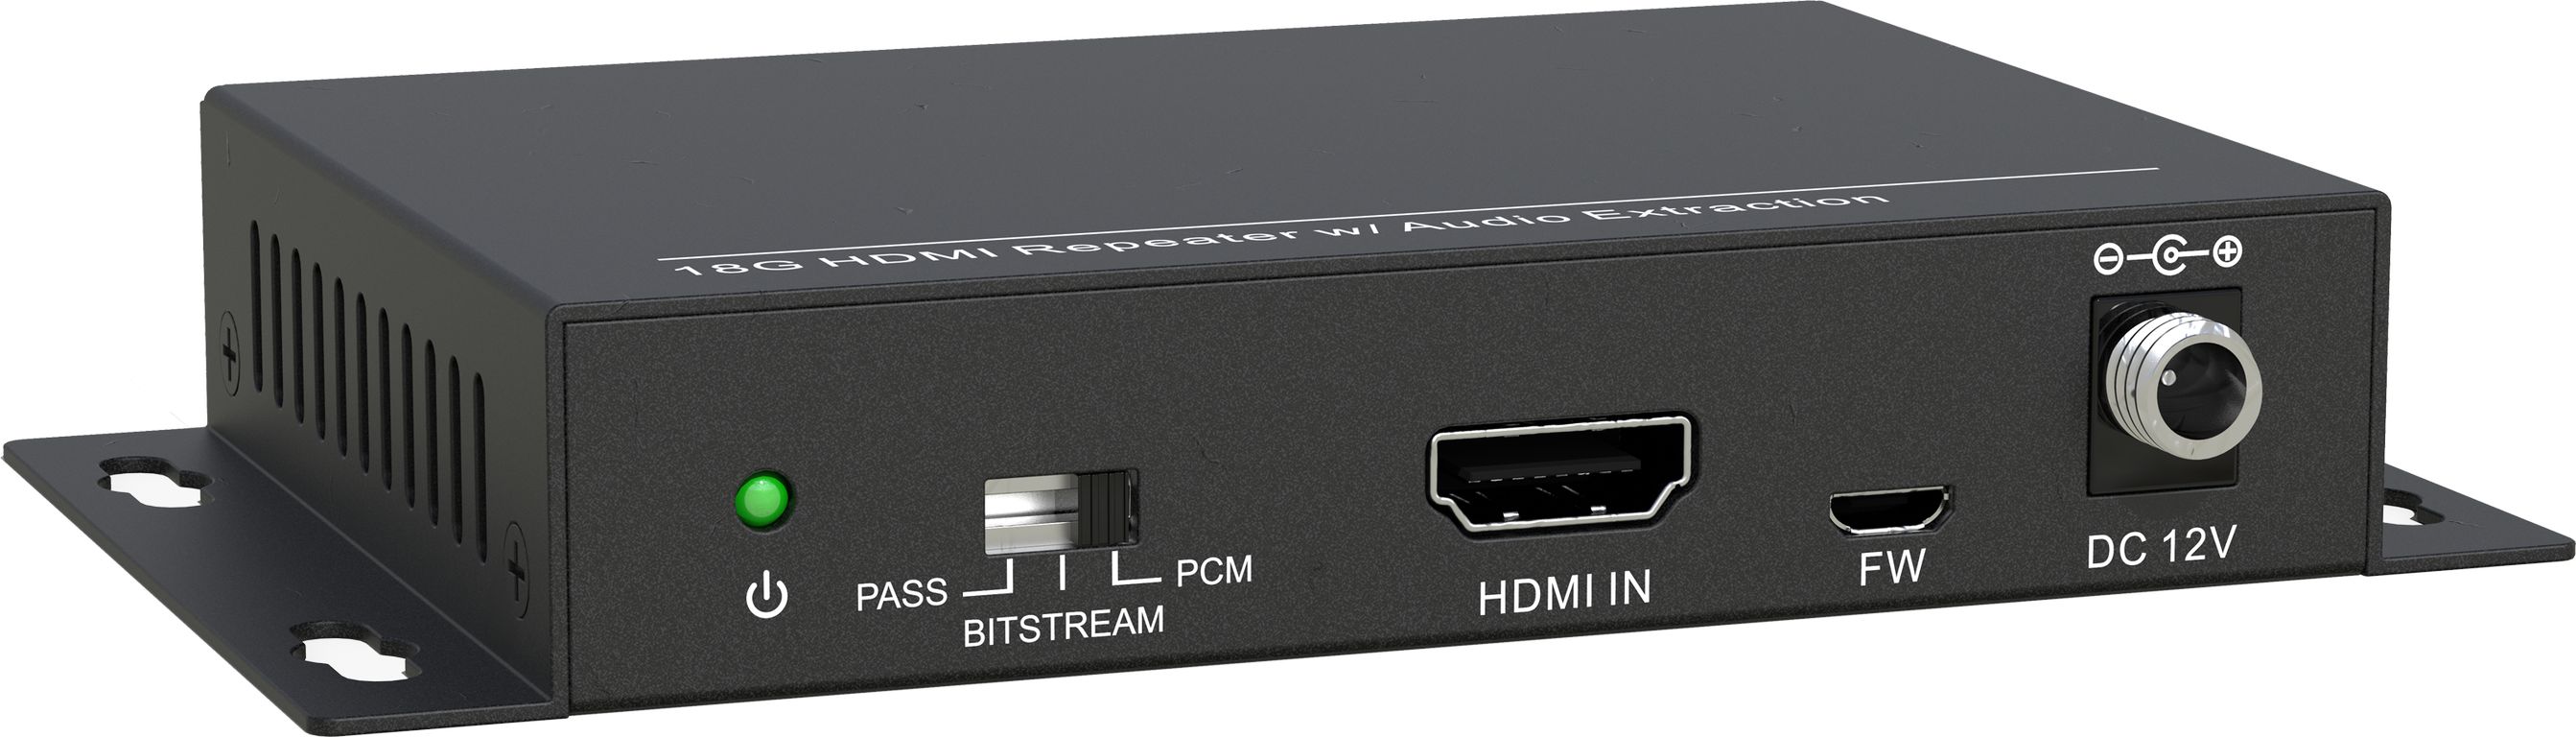 HDMI коммутаторы, разветвители, повторители Digis SS-AC1-4K2 hdmi коммутаторы разветвители повторители dr hd ew 117 sl